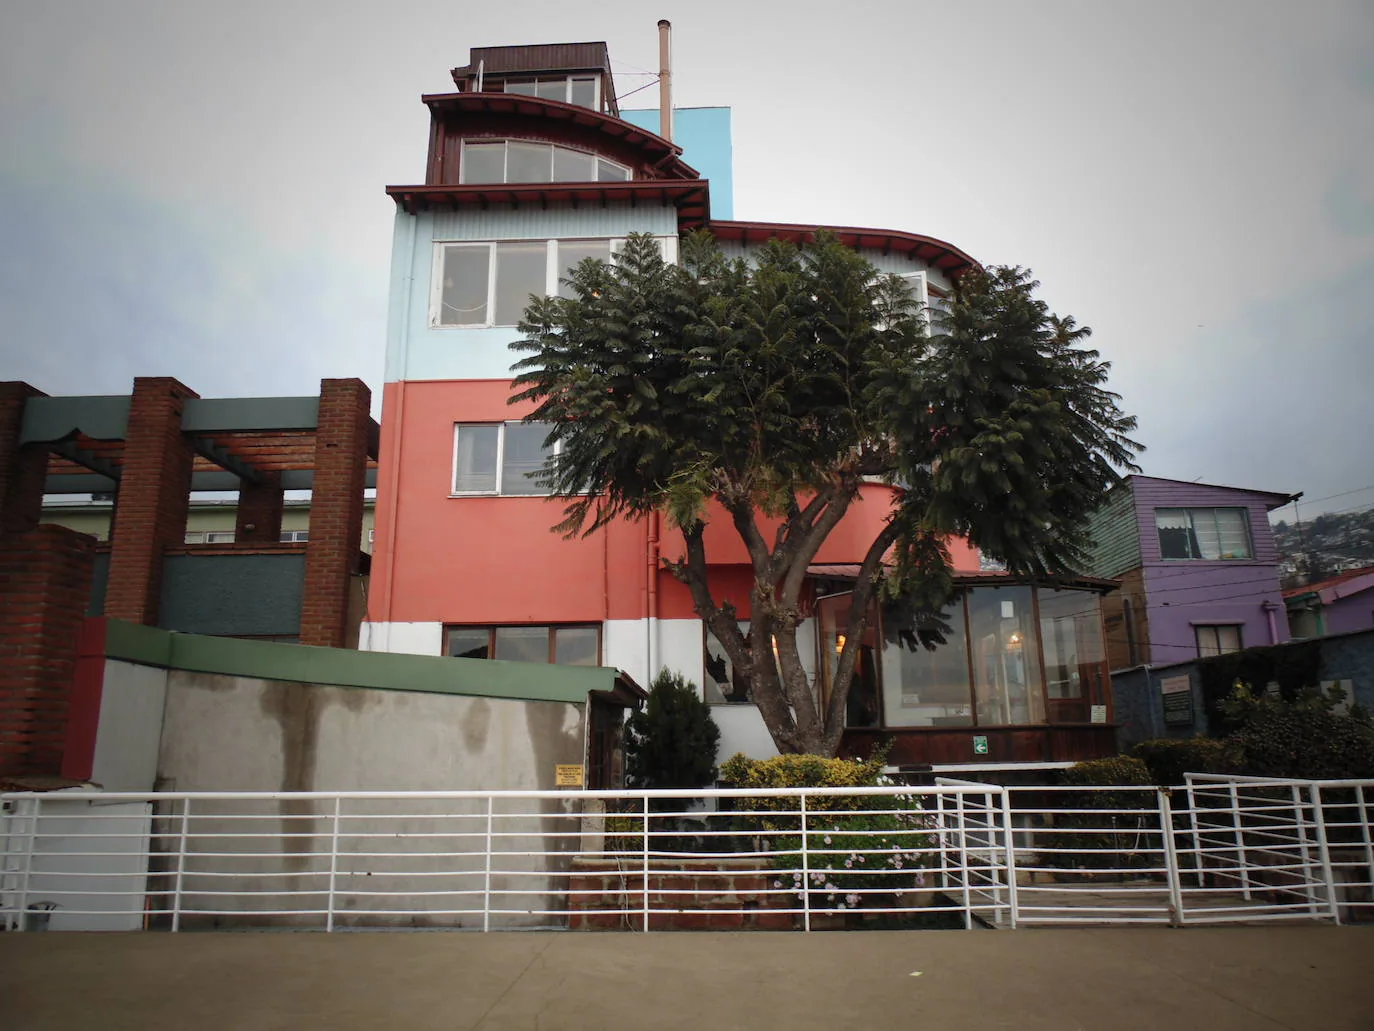 3.- Pablo Neruda (Valparaíso, Chile) | La Sebastiana, que sí se llama la casa, es una vivienda de cuatro pisos, con escaleras estrechas y una espléndida vista a la bahía. Neruda habla de la construcción de esta casa en los versos titulados 'A la Sebastiana'.